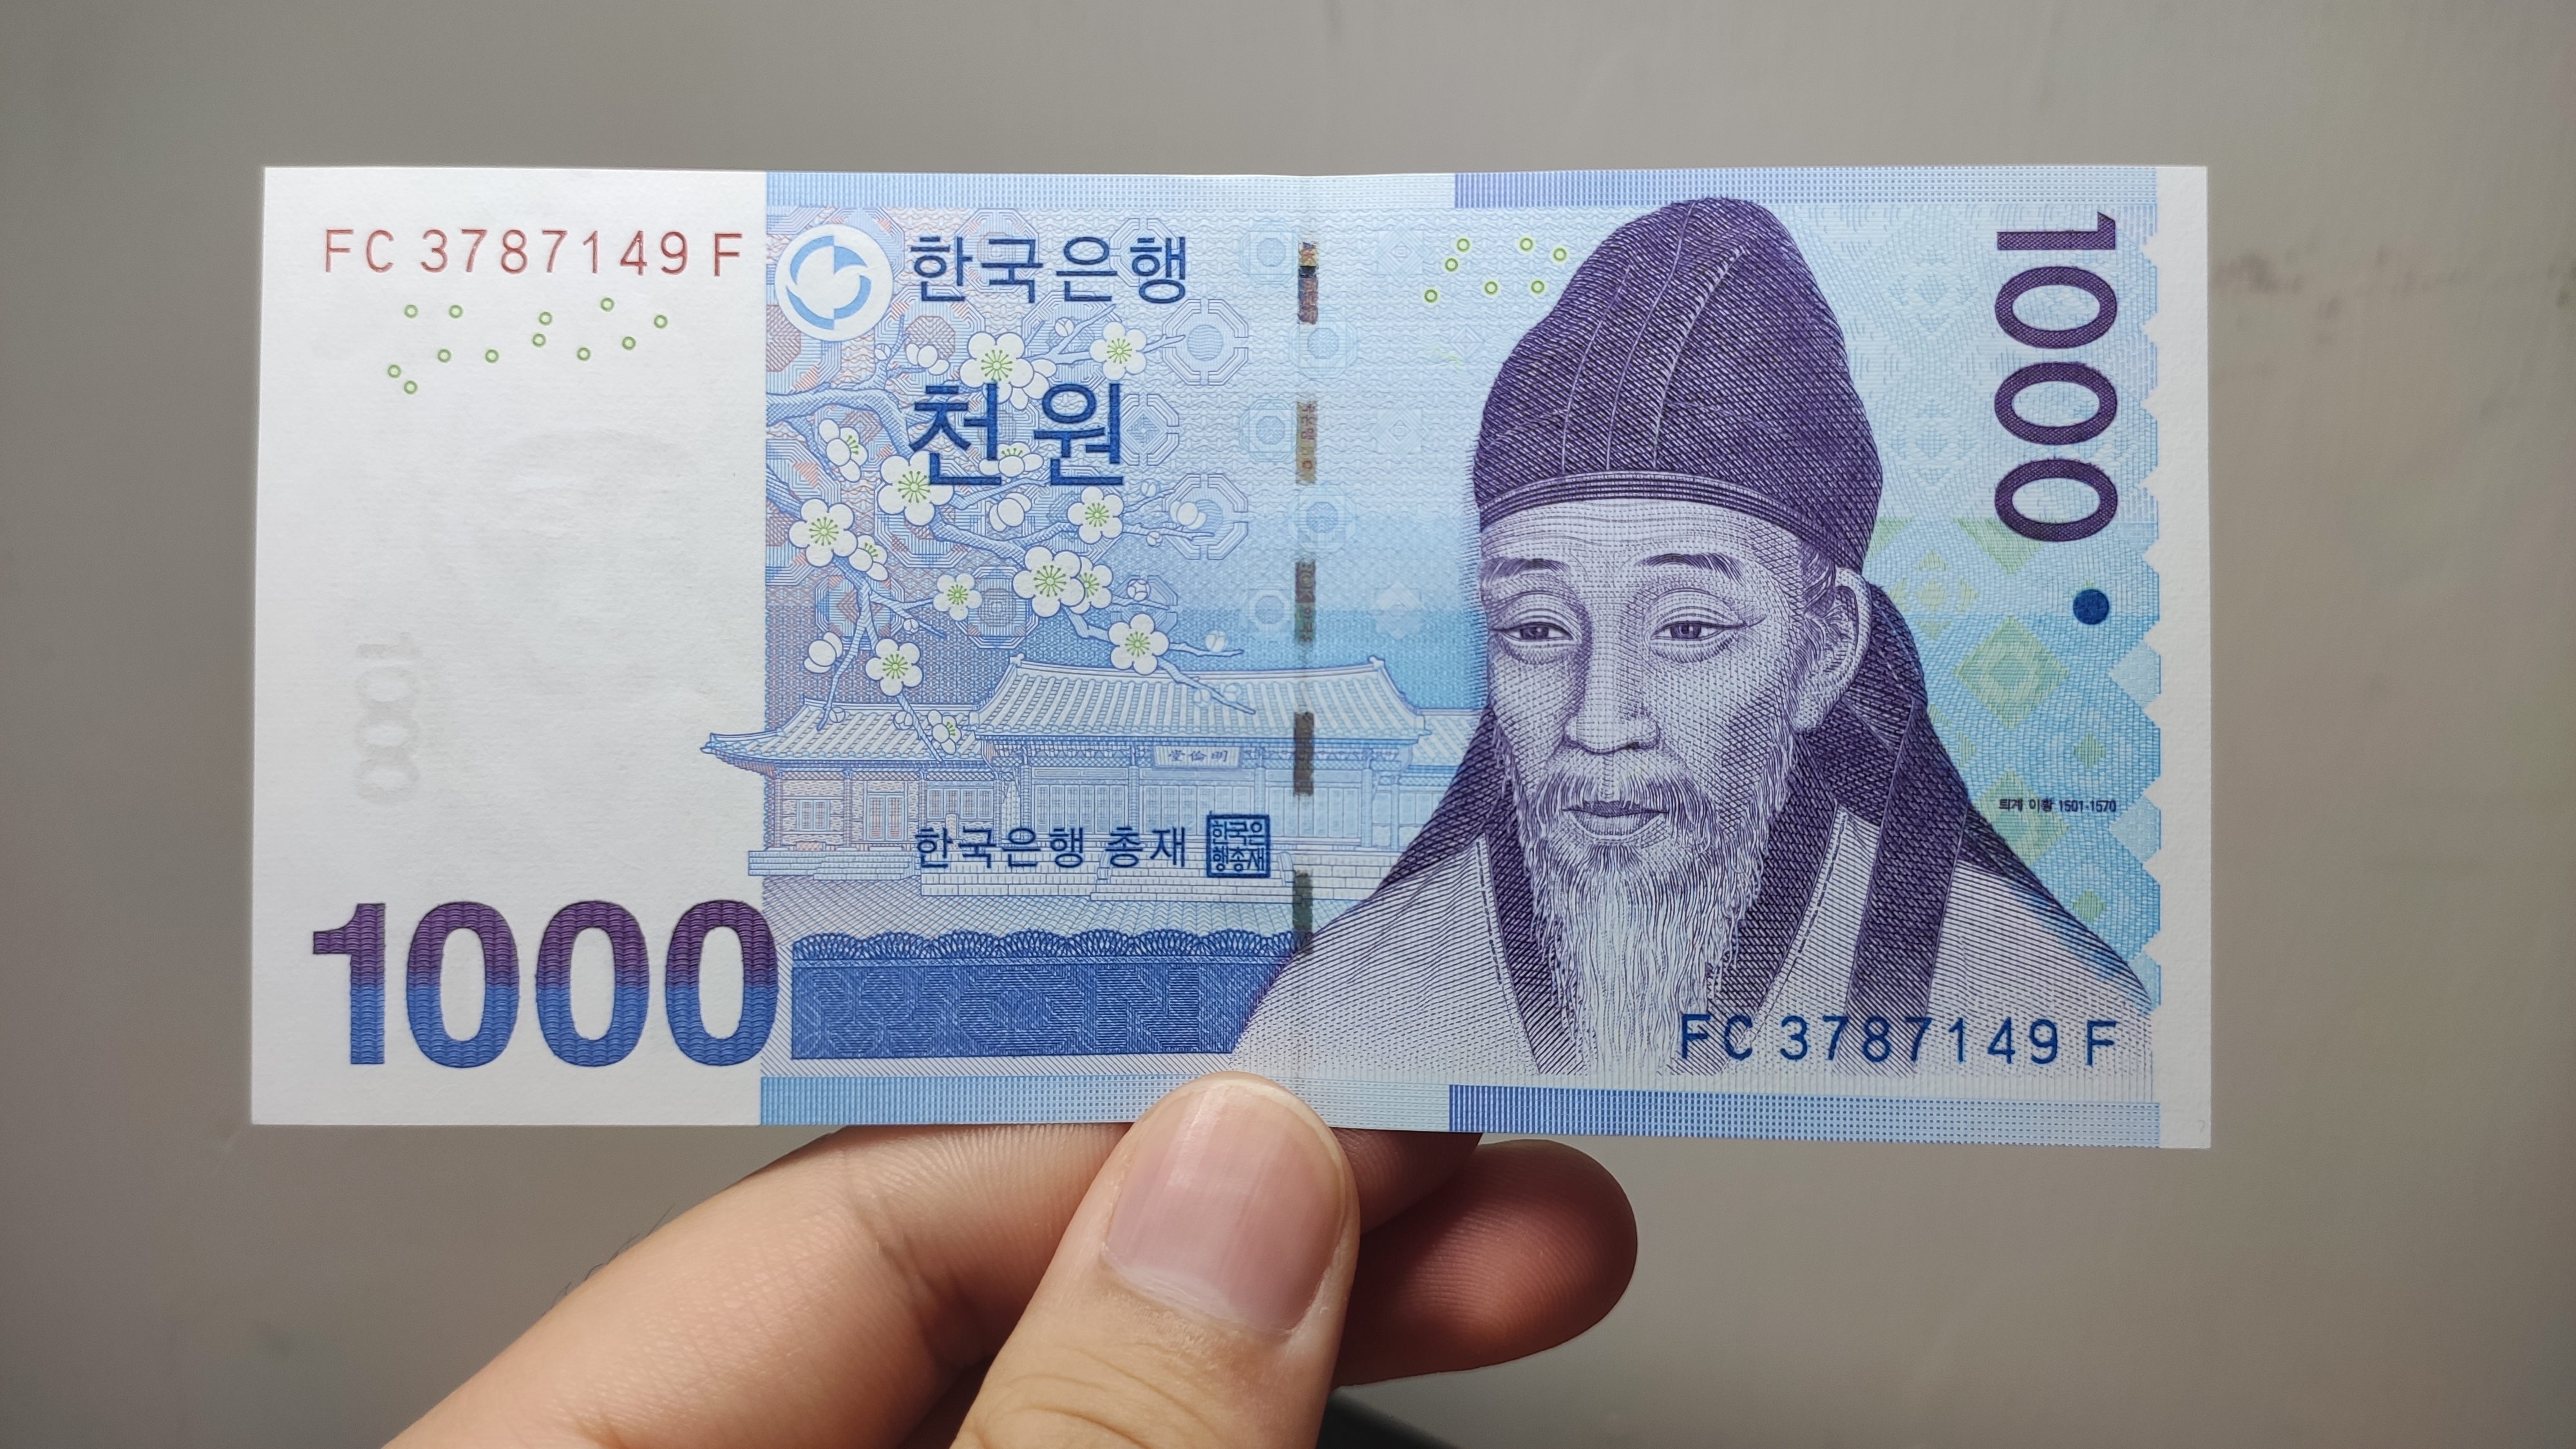 按照目前的汇率,最小面额的1000韩元约合人民币5.7元.